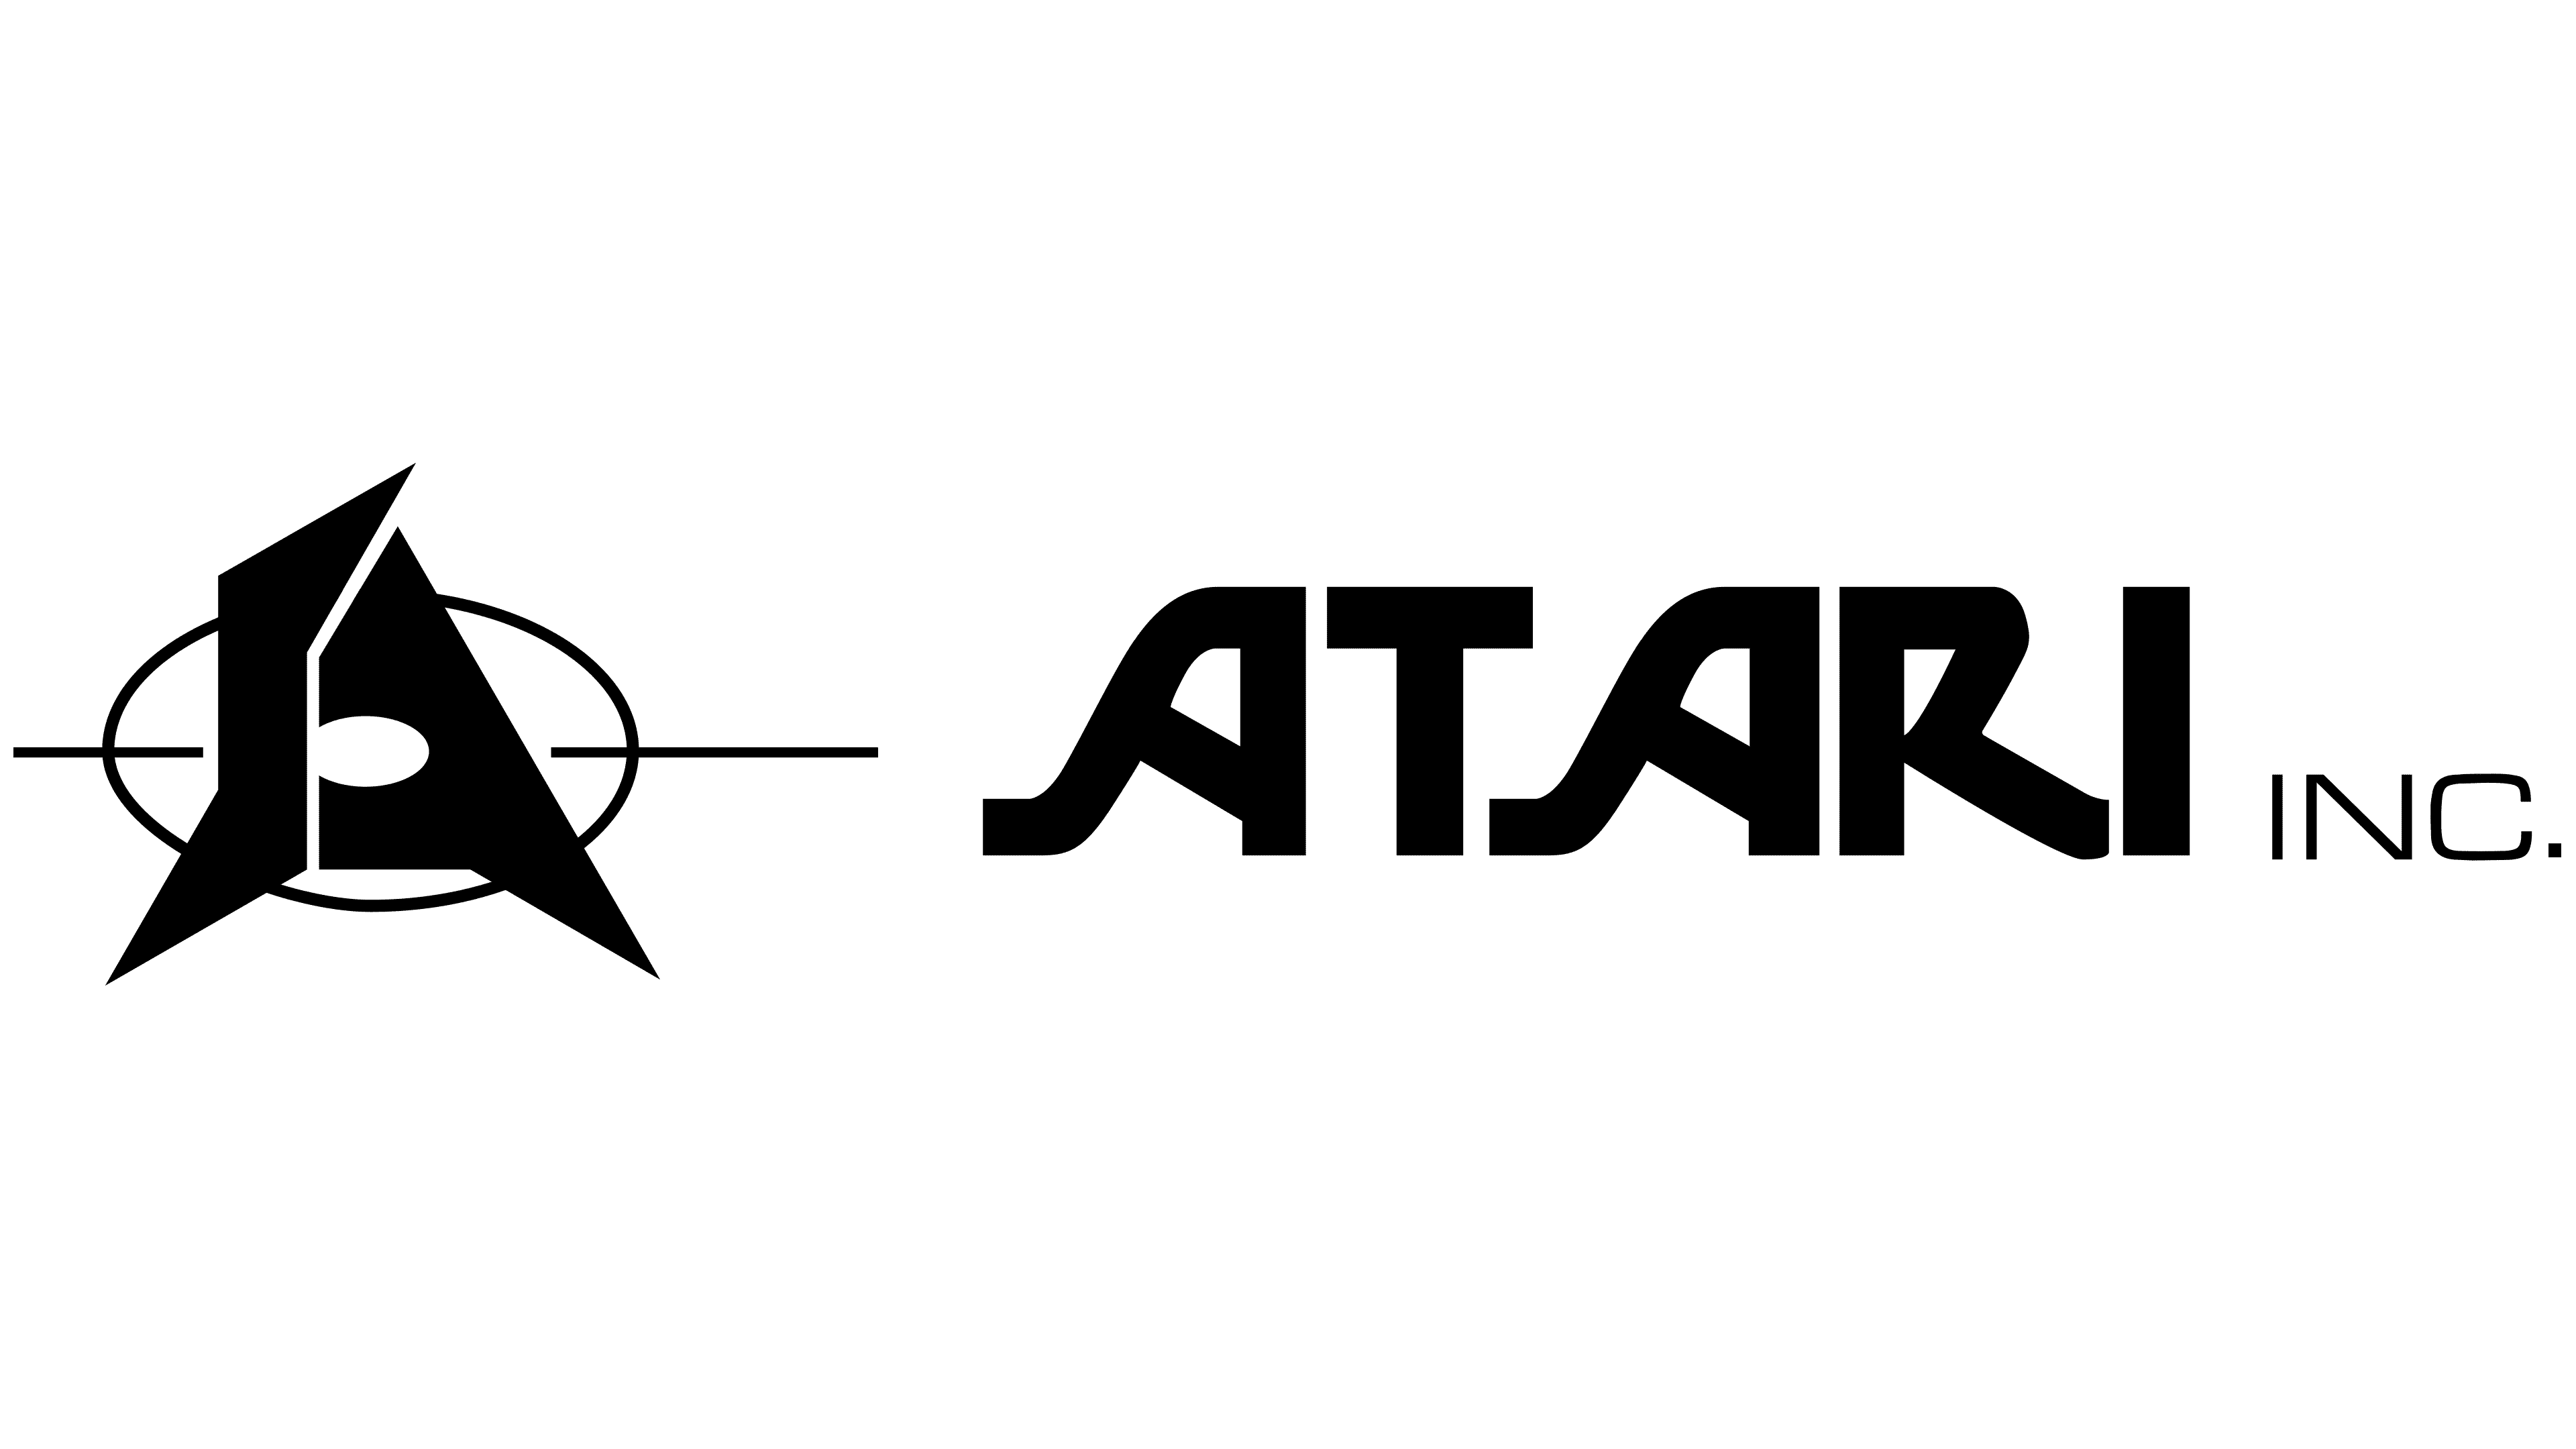 Atari Logo History: From Pixels To The Atari Symbol